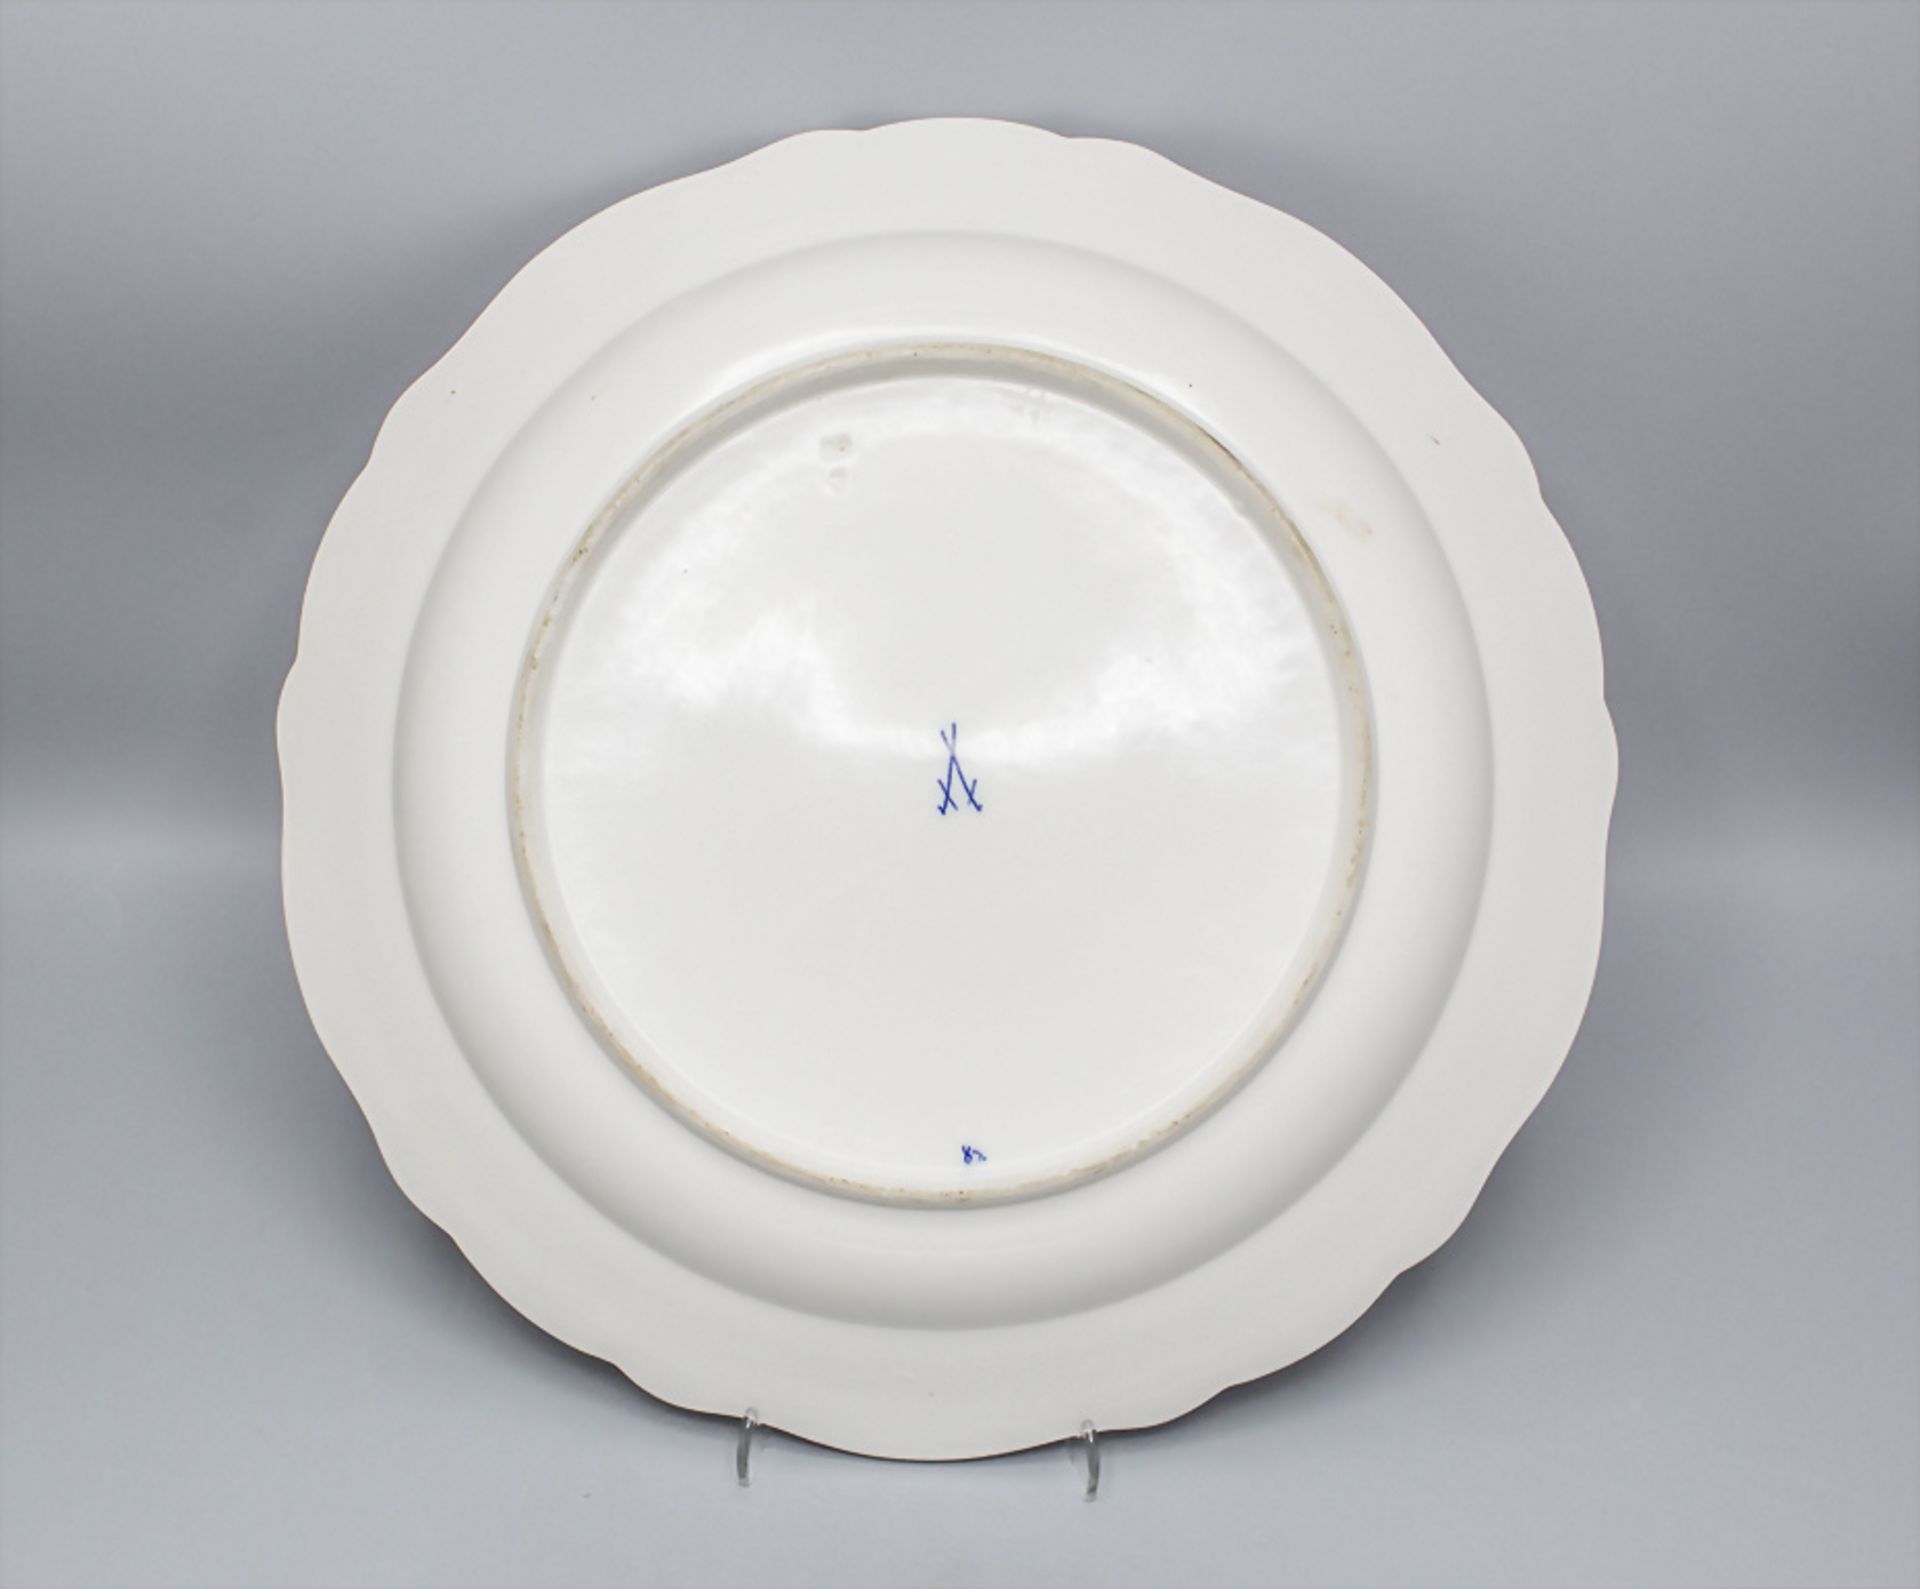 Große Zwiebelmuster Servierplatte / Schale / A large serving plate with onion pattern, ... - Bild 3 aus 3